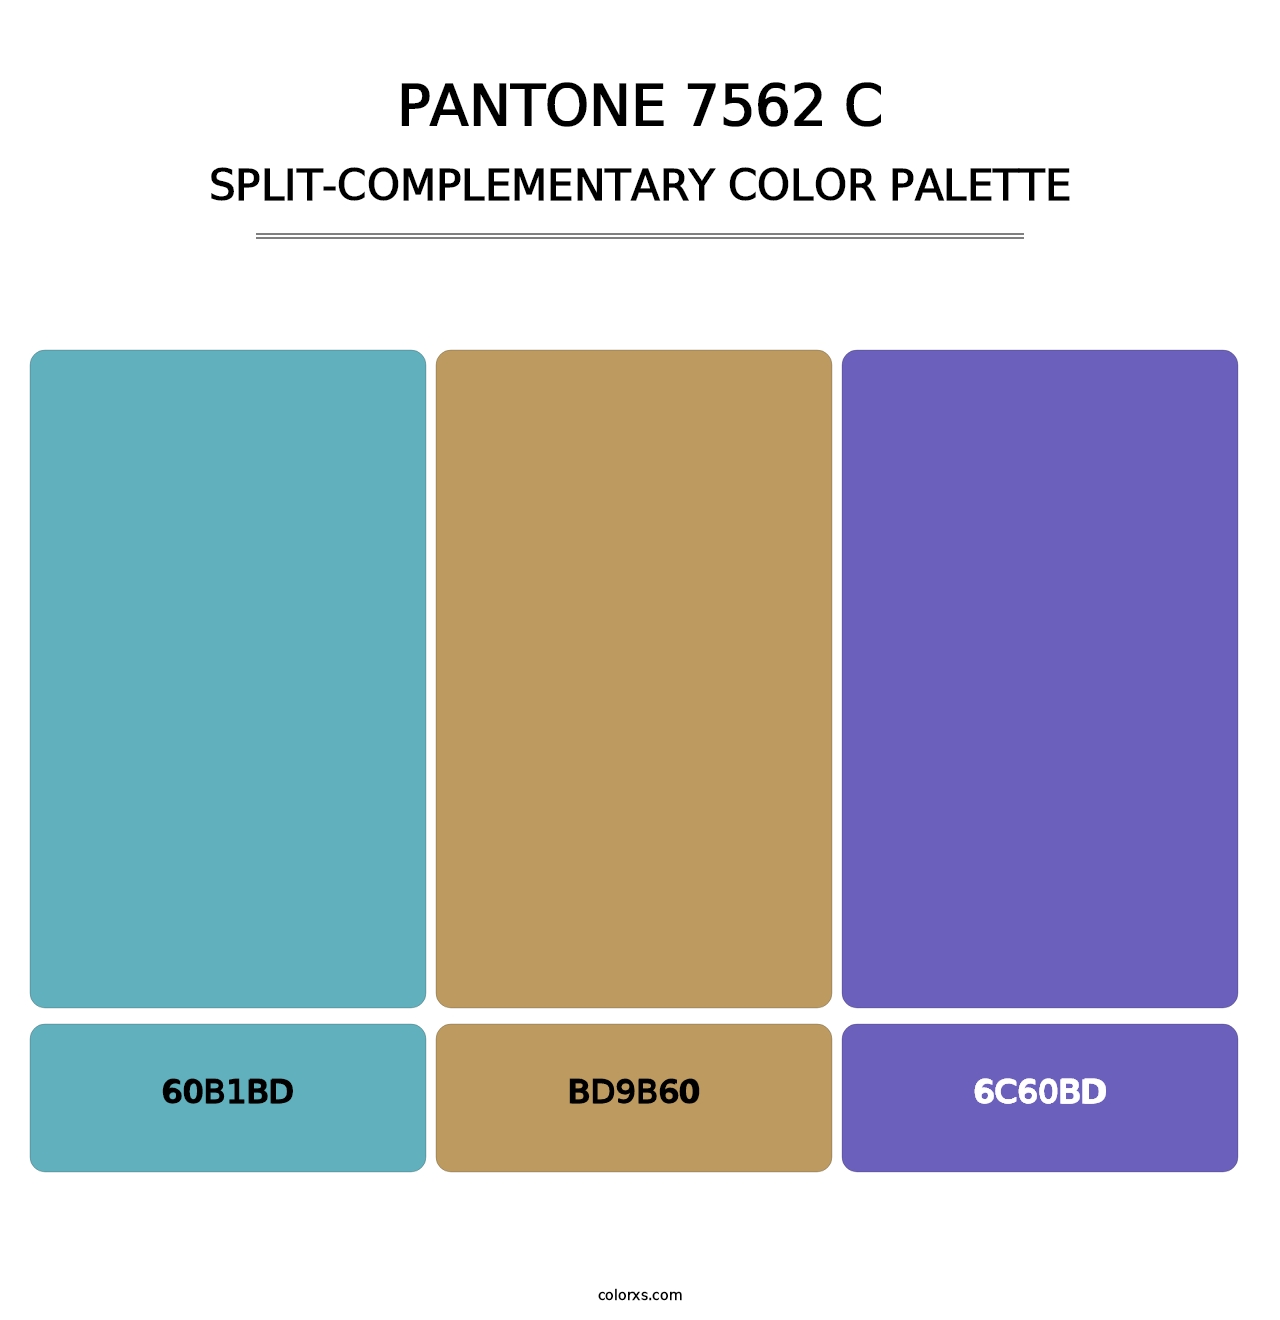 PANTONE 7562 C - Split-Complementary Color Palette